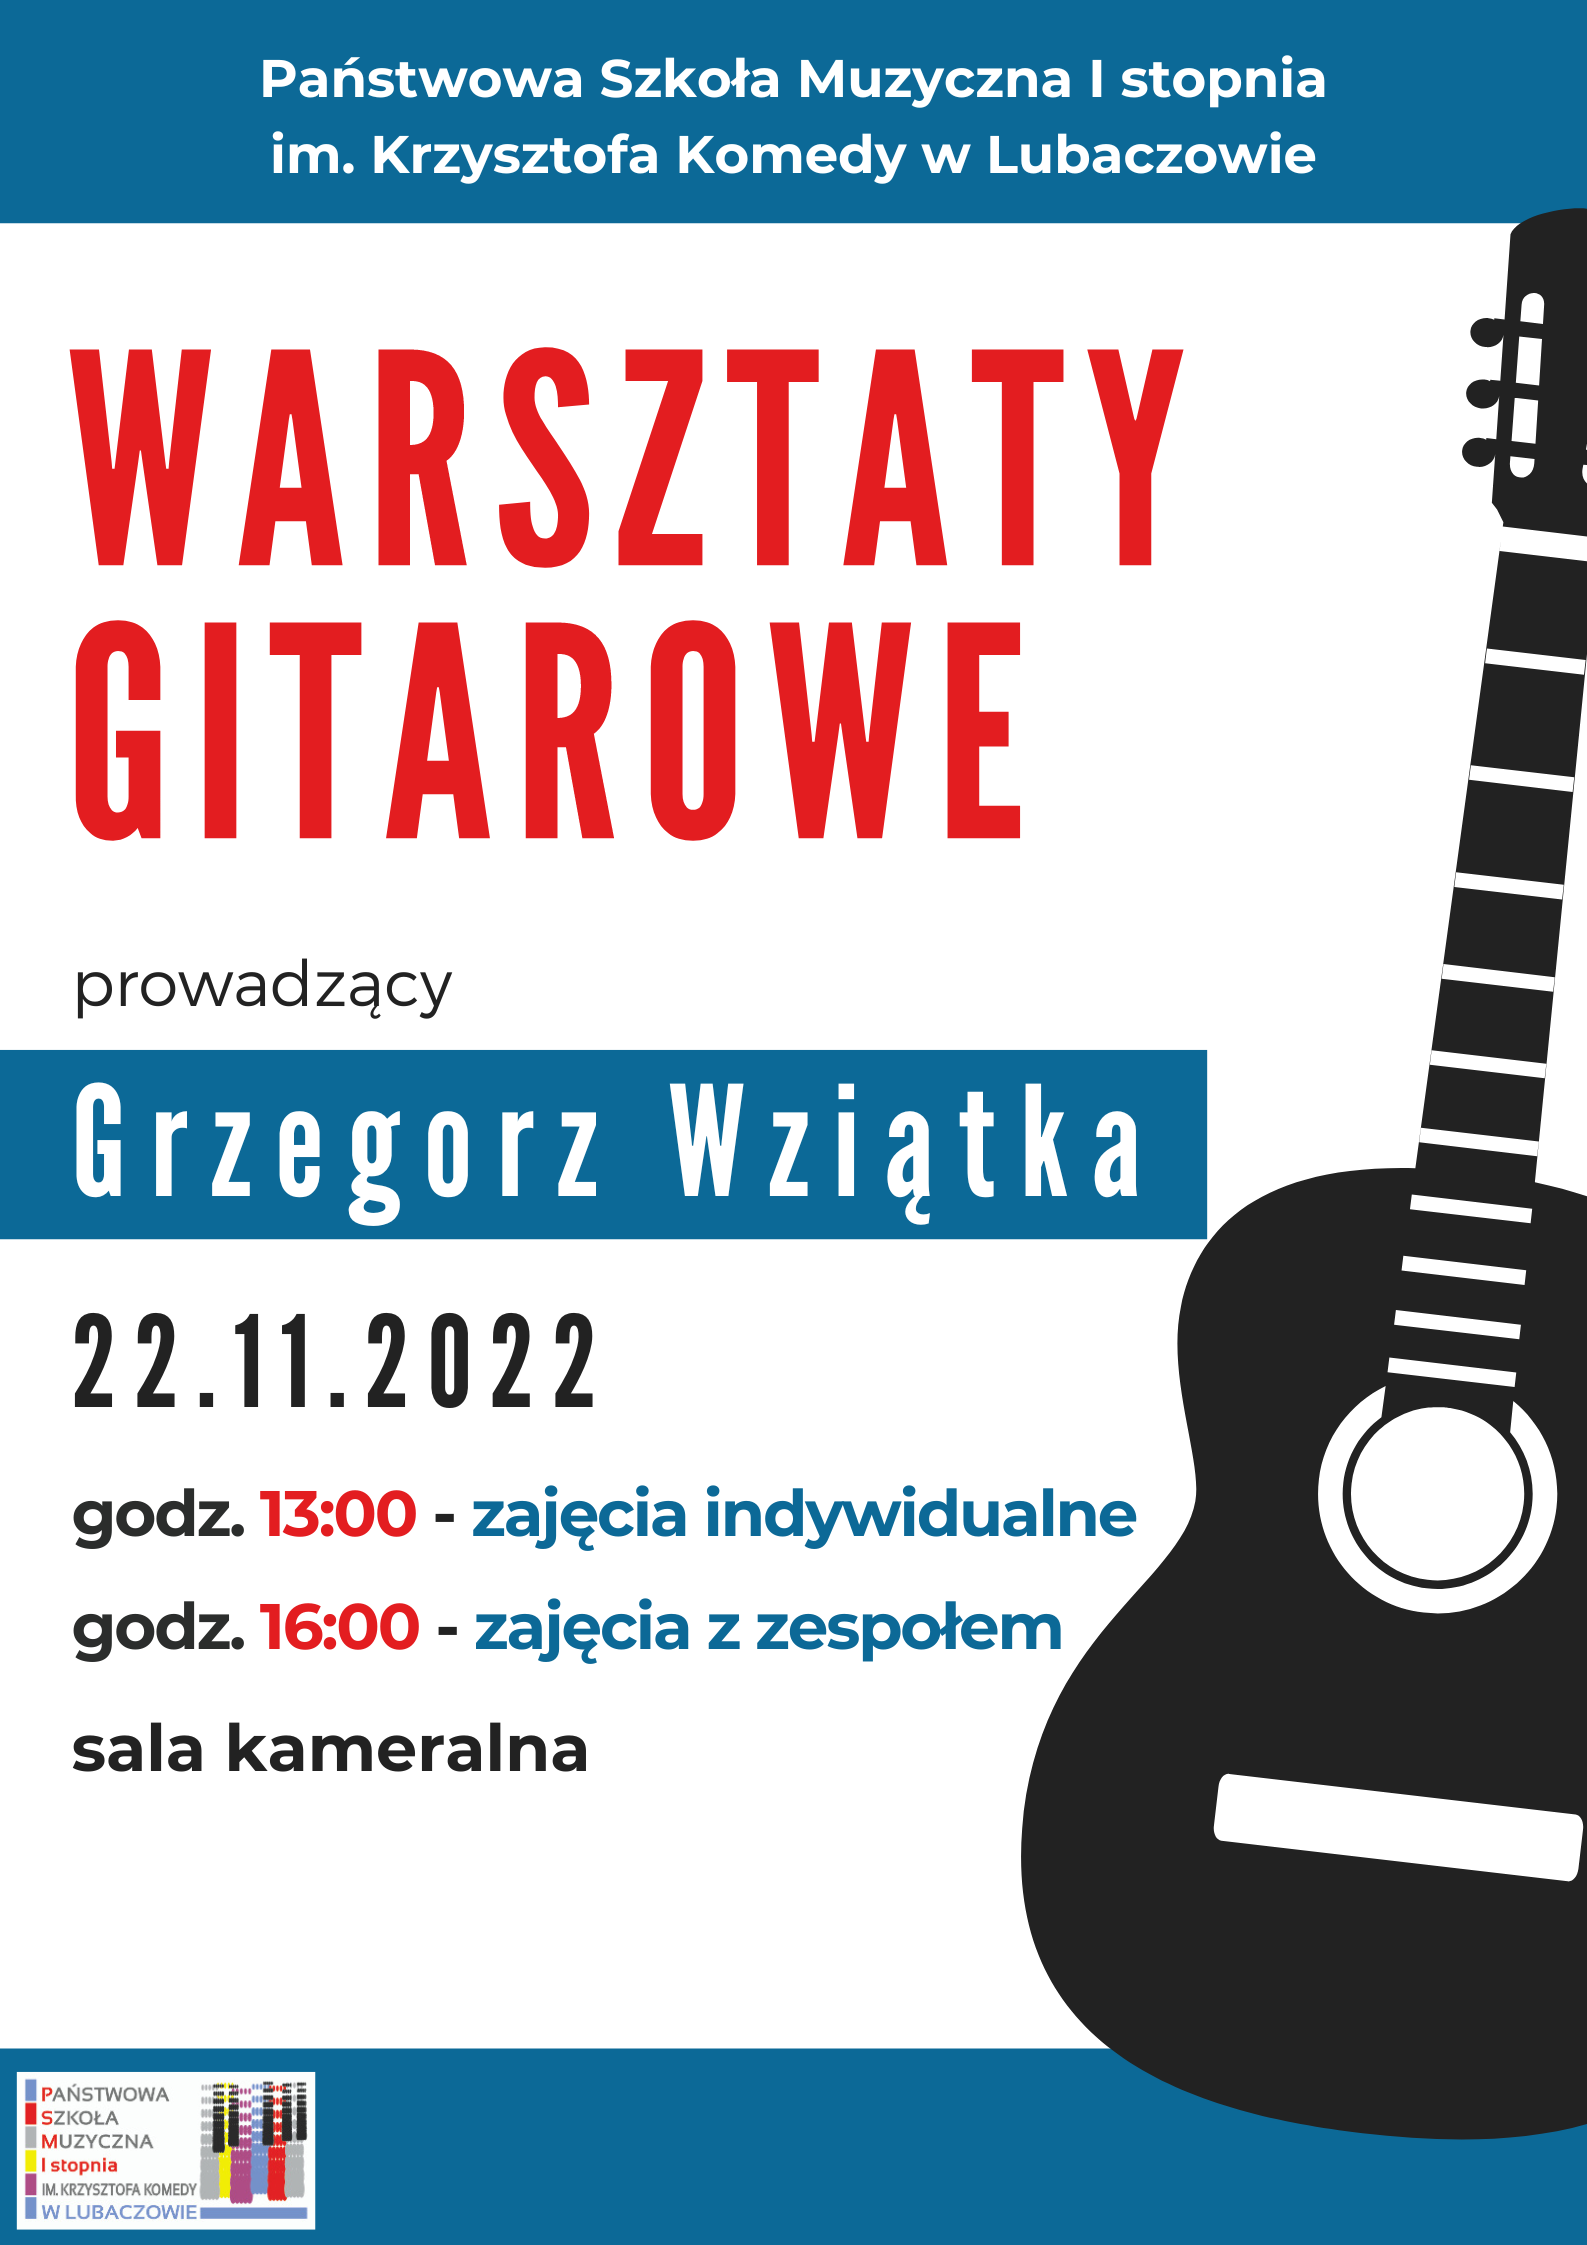 Plakat warsztatów gitarowych w dniu 22.11.2022 na białym tle z niebieskimi elementami poziomymi, ikoną gitary w kolorze czarnym po prawej stronie, logo szkoły w lewym dolnym rogu i szczegółową informacją tekstową o warsztatach